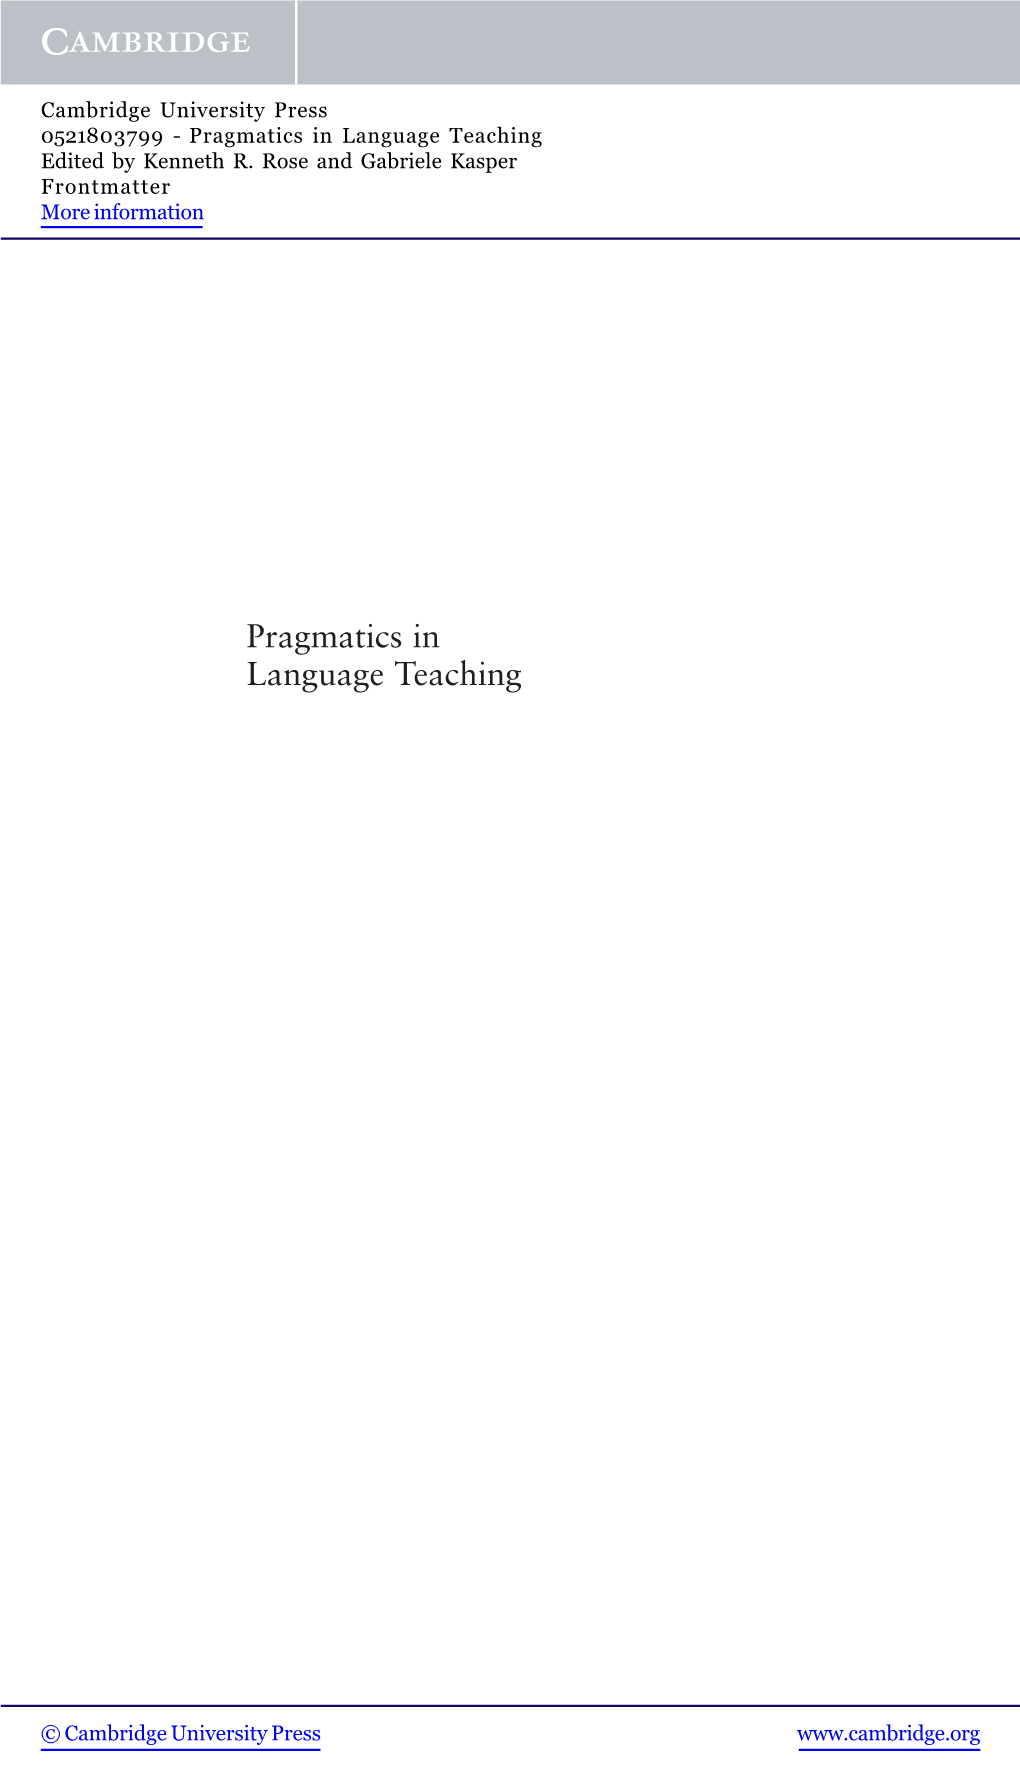 Pragmatics in Language Teaching Edited by Kenneth R